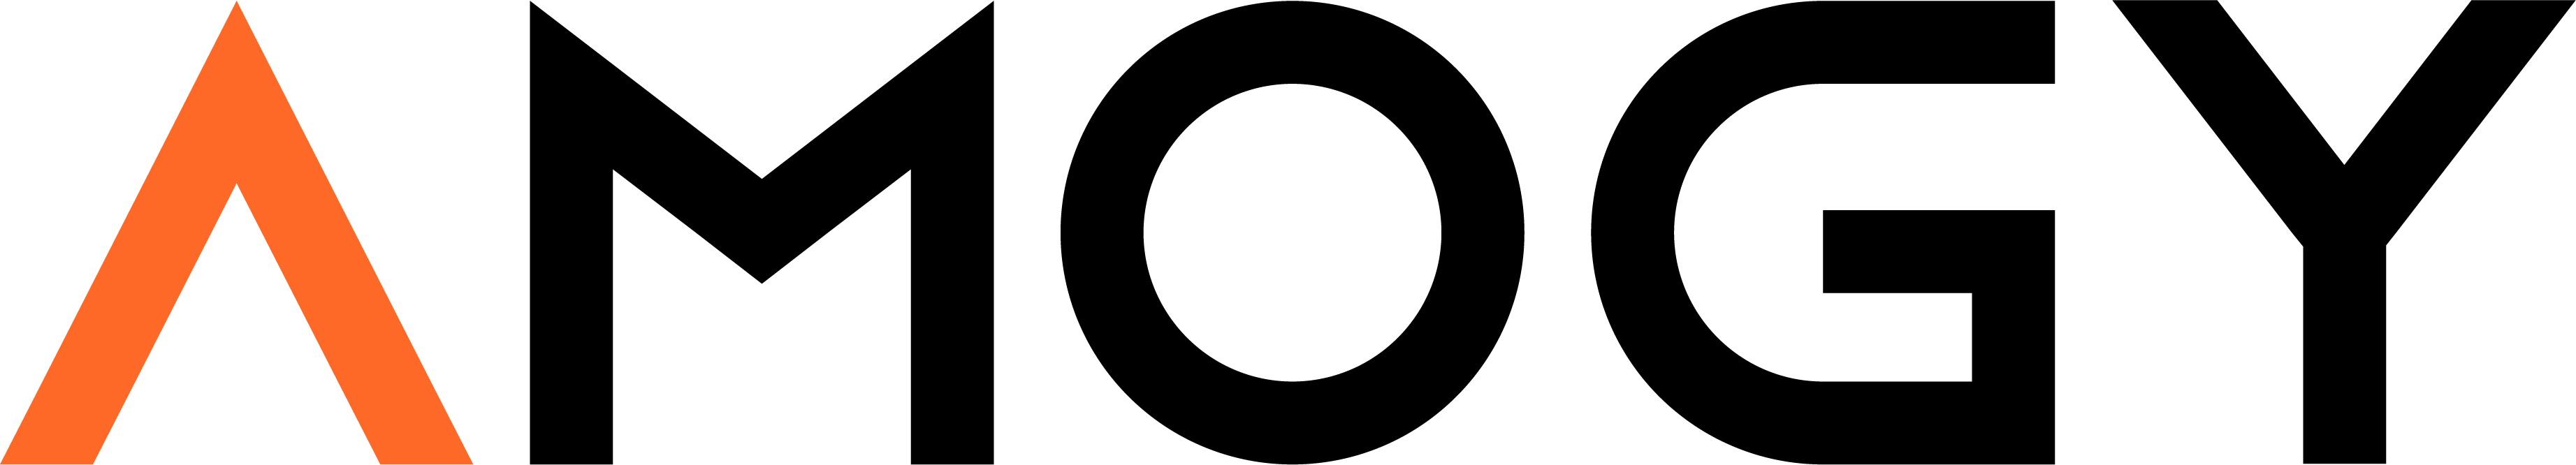 Amogy logo